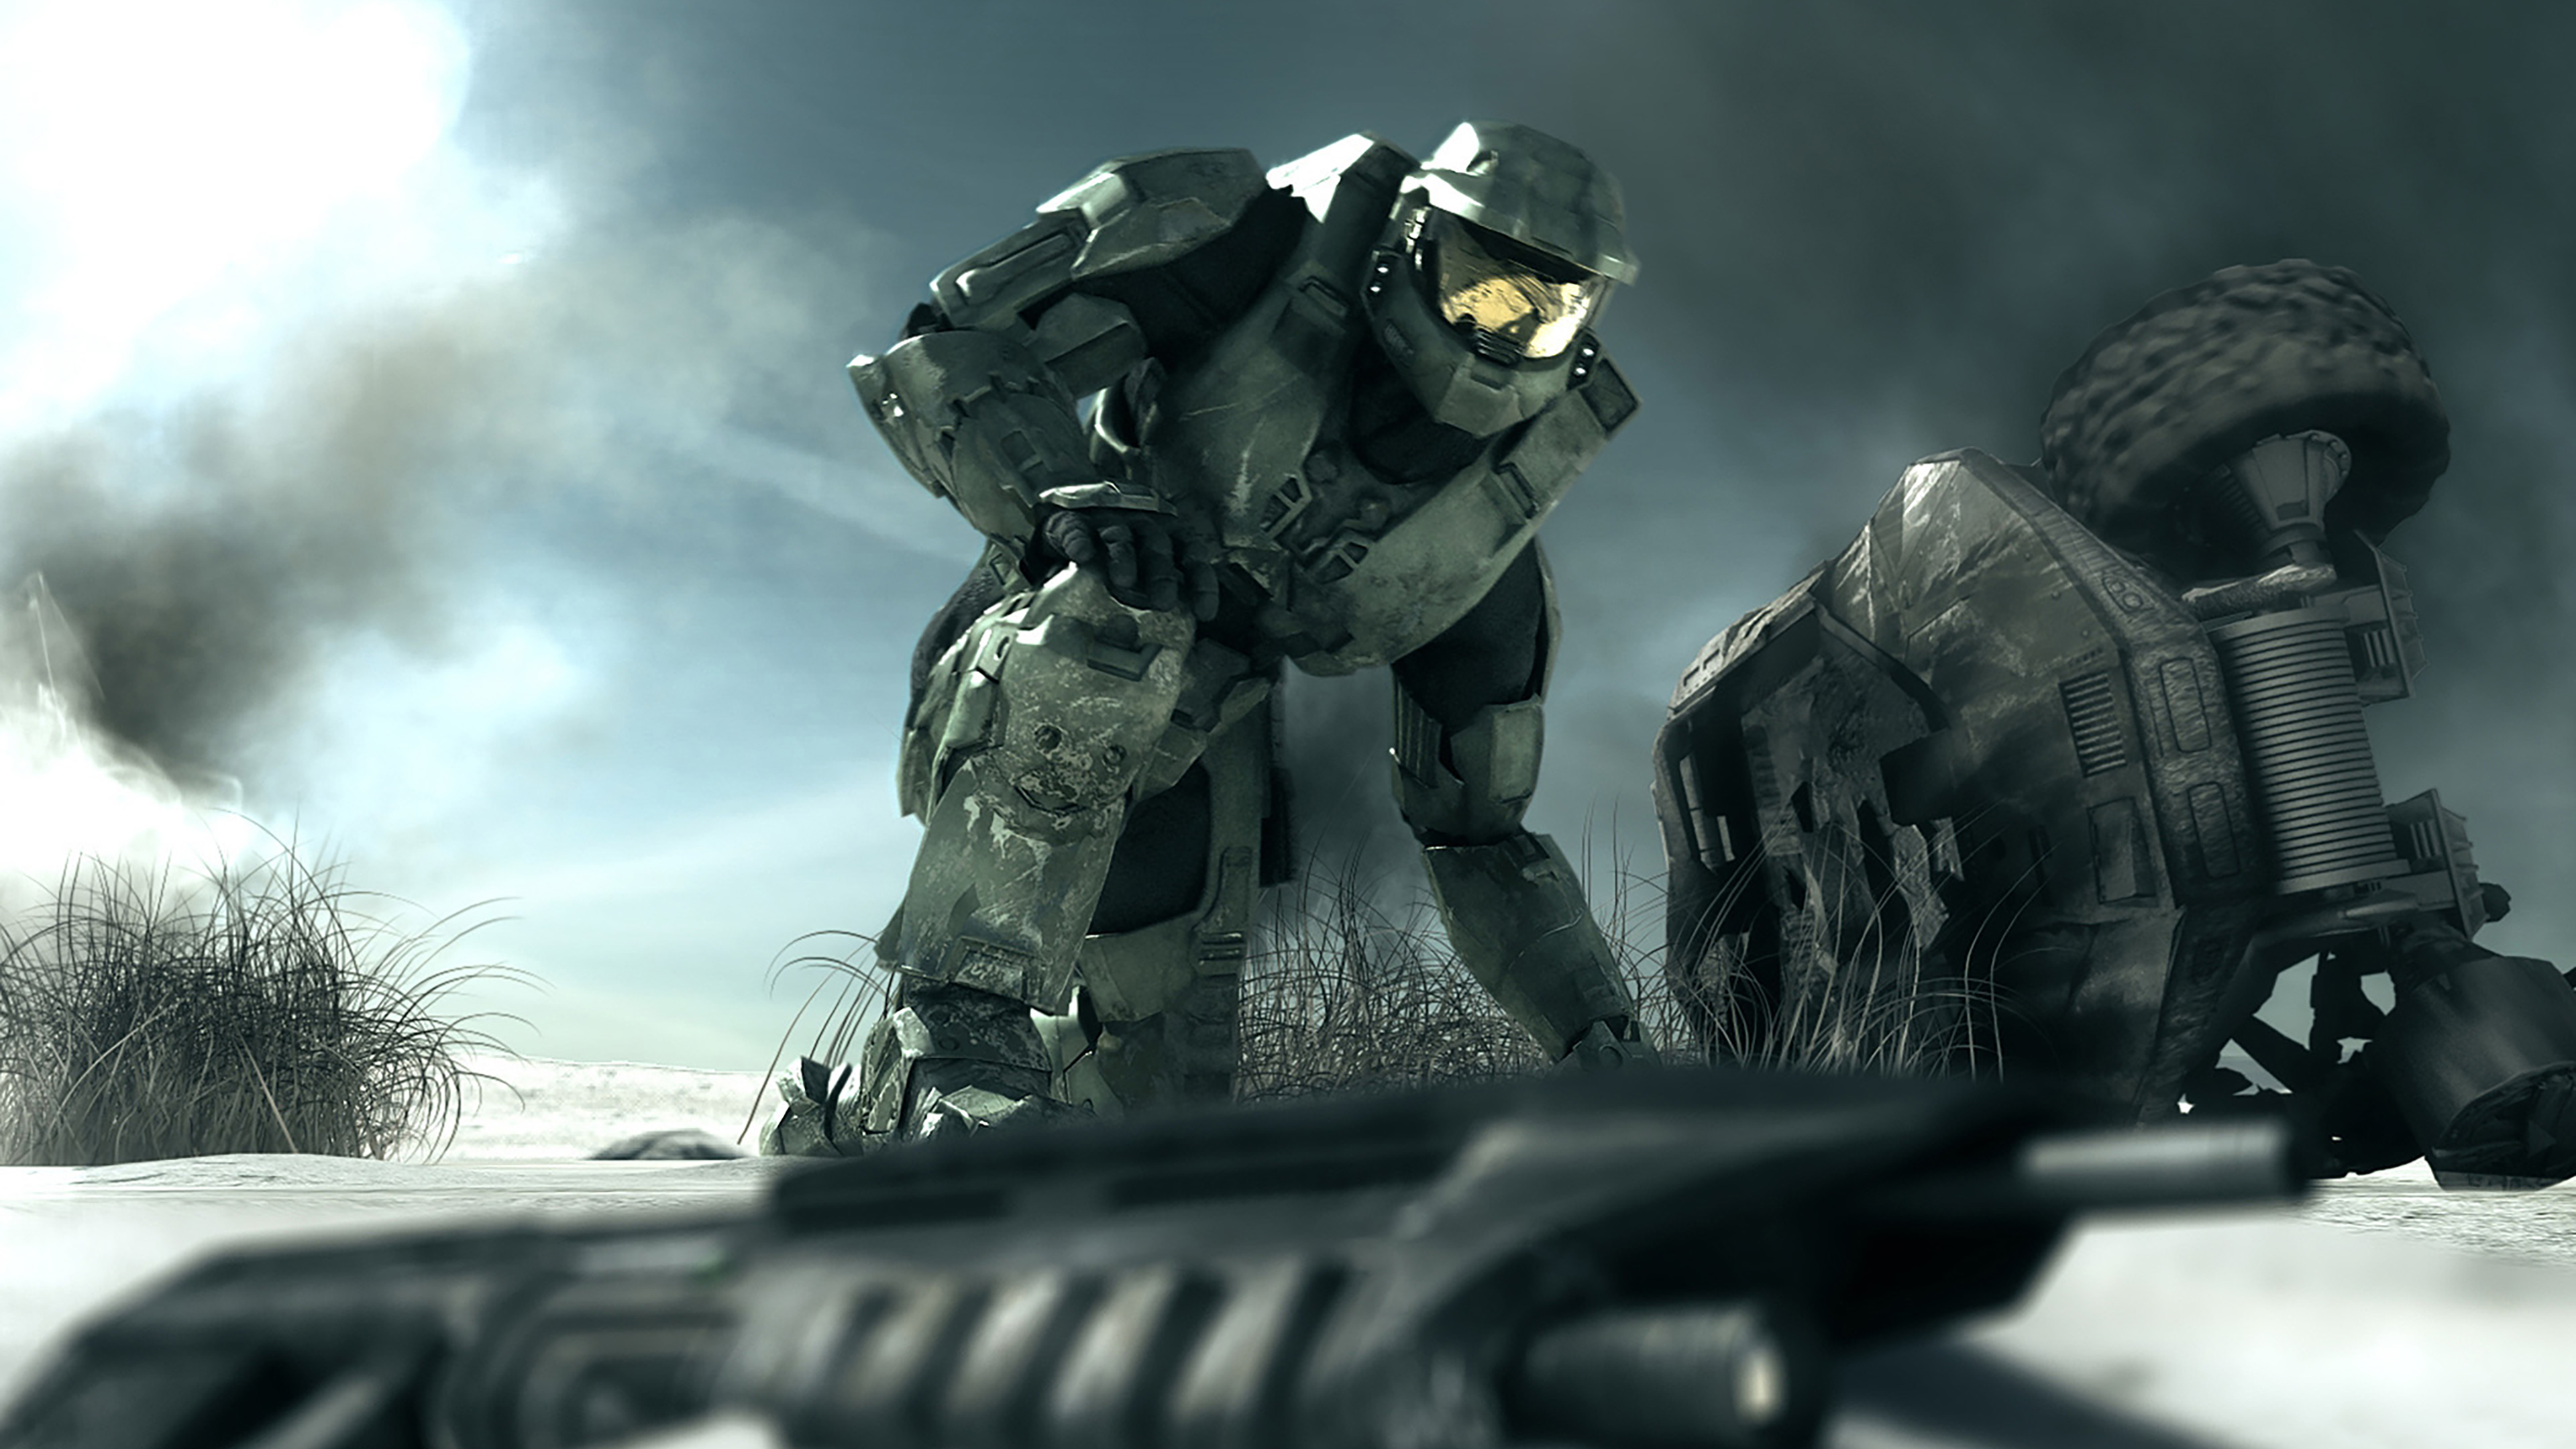 Descarga gratuita de fondo de pantalla para móvil de Aureola, Videojuego, Halo 3.